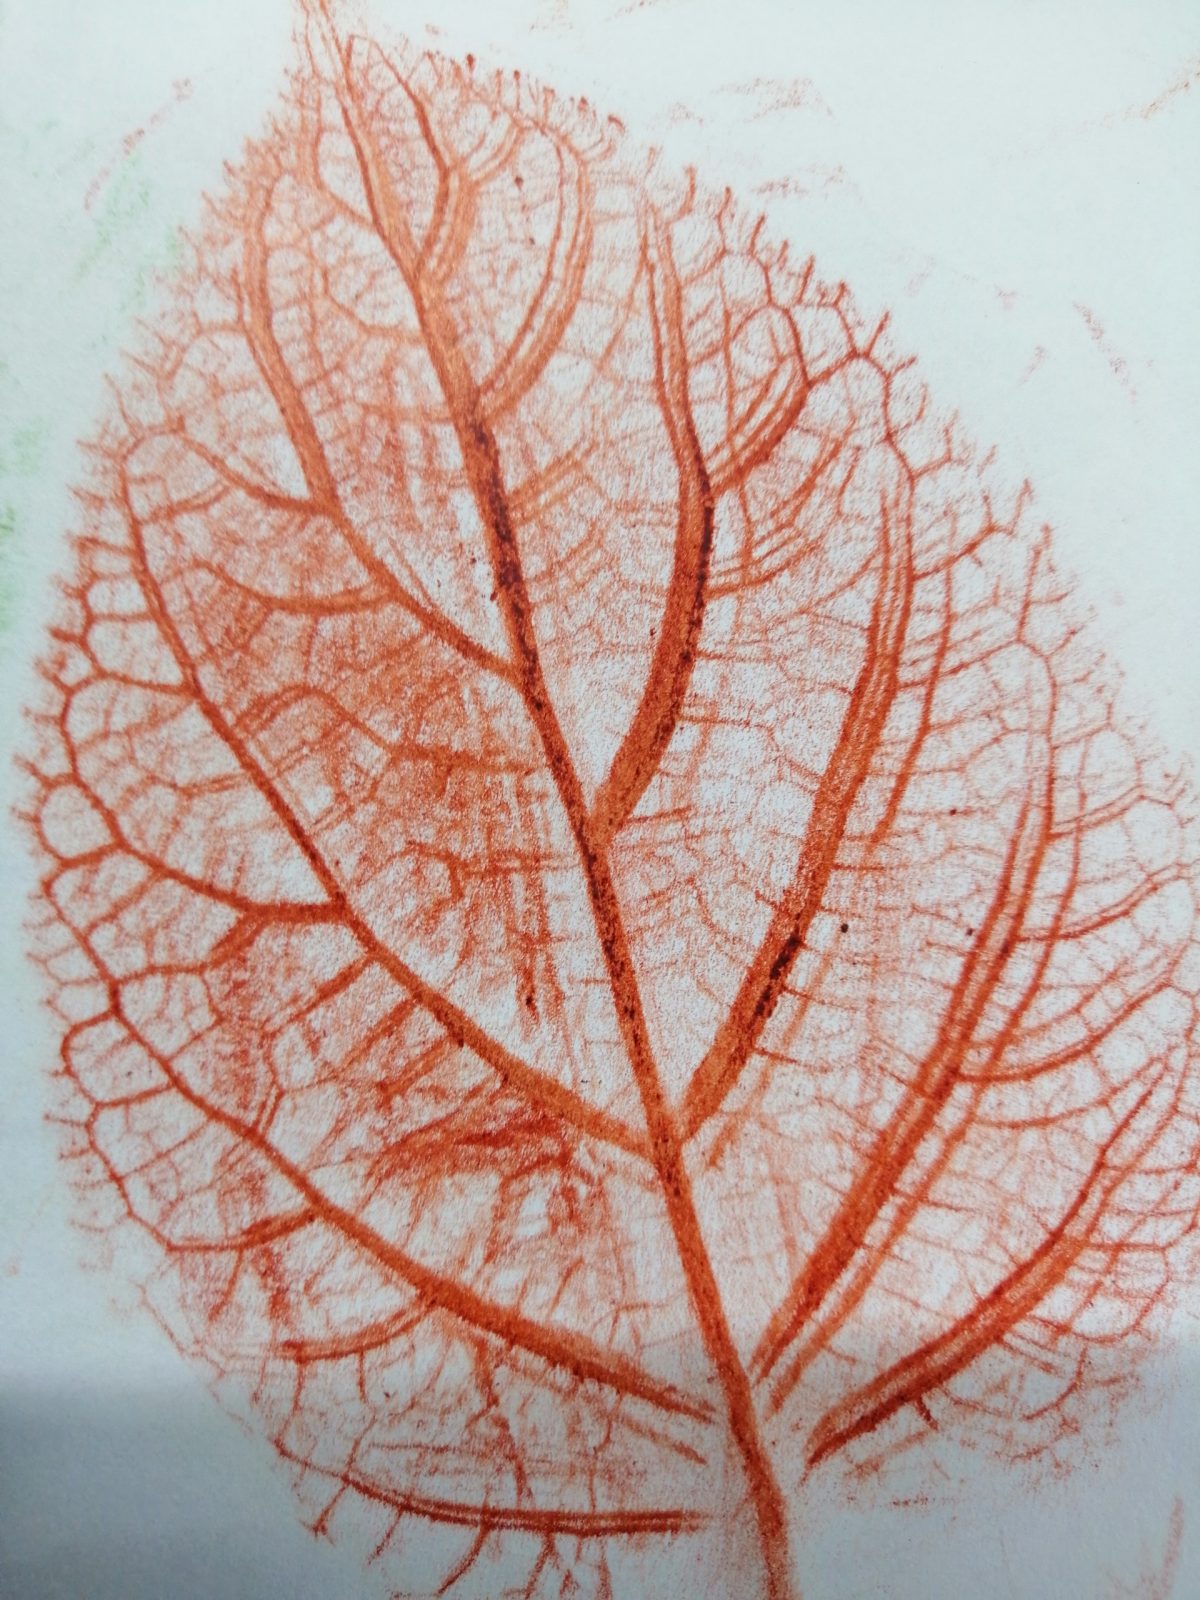 Kompozycja plastyczna struktury jesiennego liścia w układzie diagonalnym. Praca wykonana w technice frotażu z użyciem barw ciepłych.